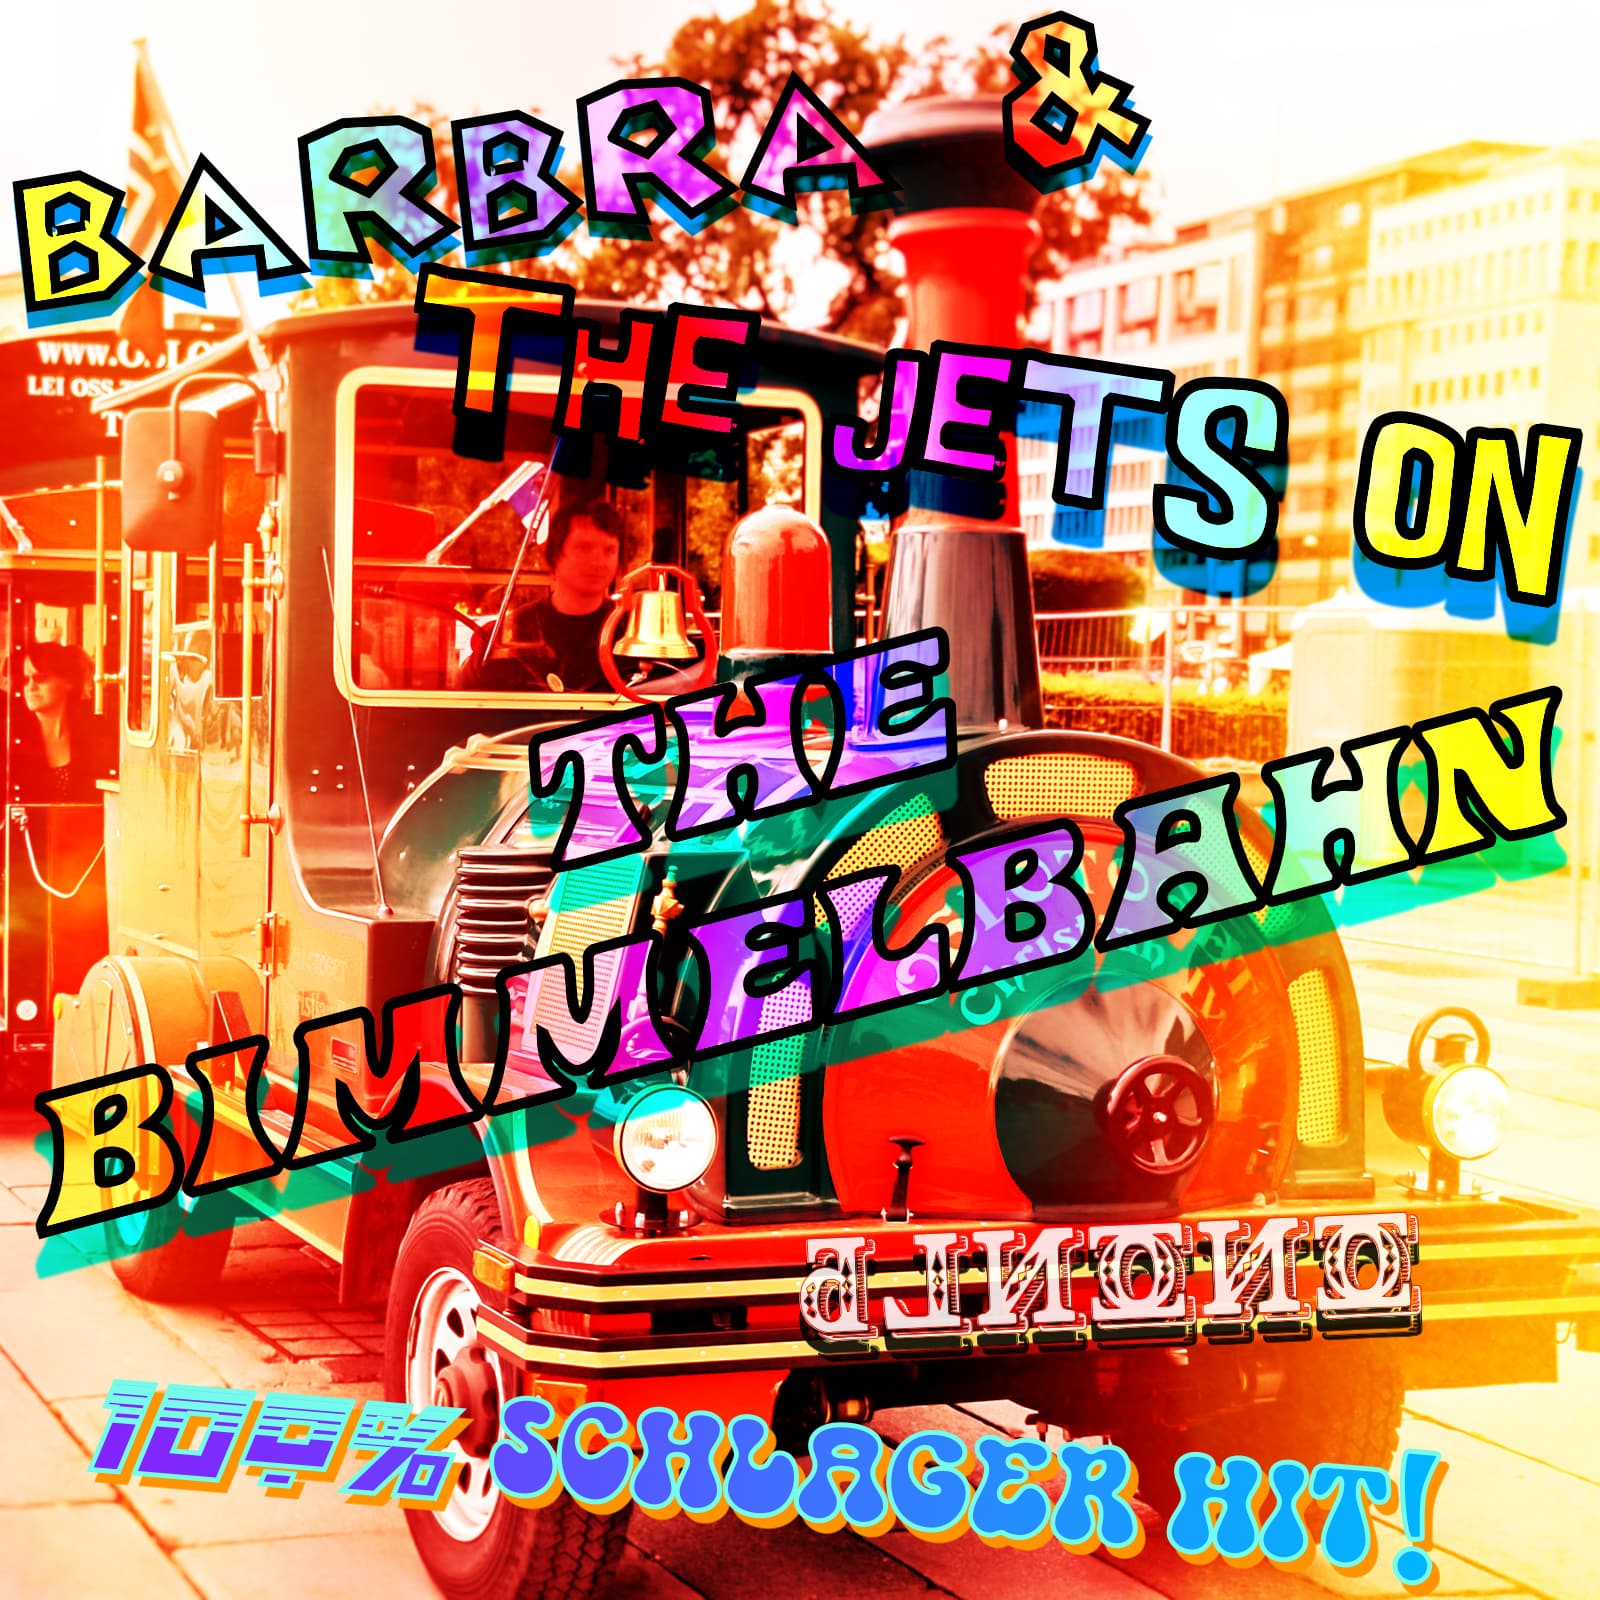 Barbra And The Jets On The Bimmelbahn (Elton John vs Buddy Poke vs Duck Sauce) mashup cover